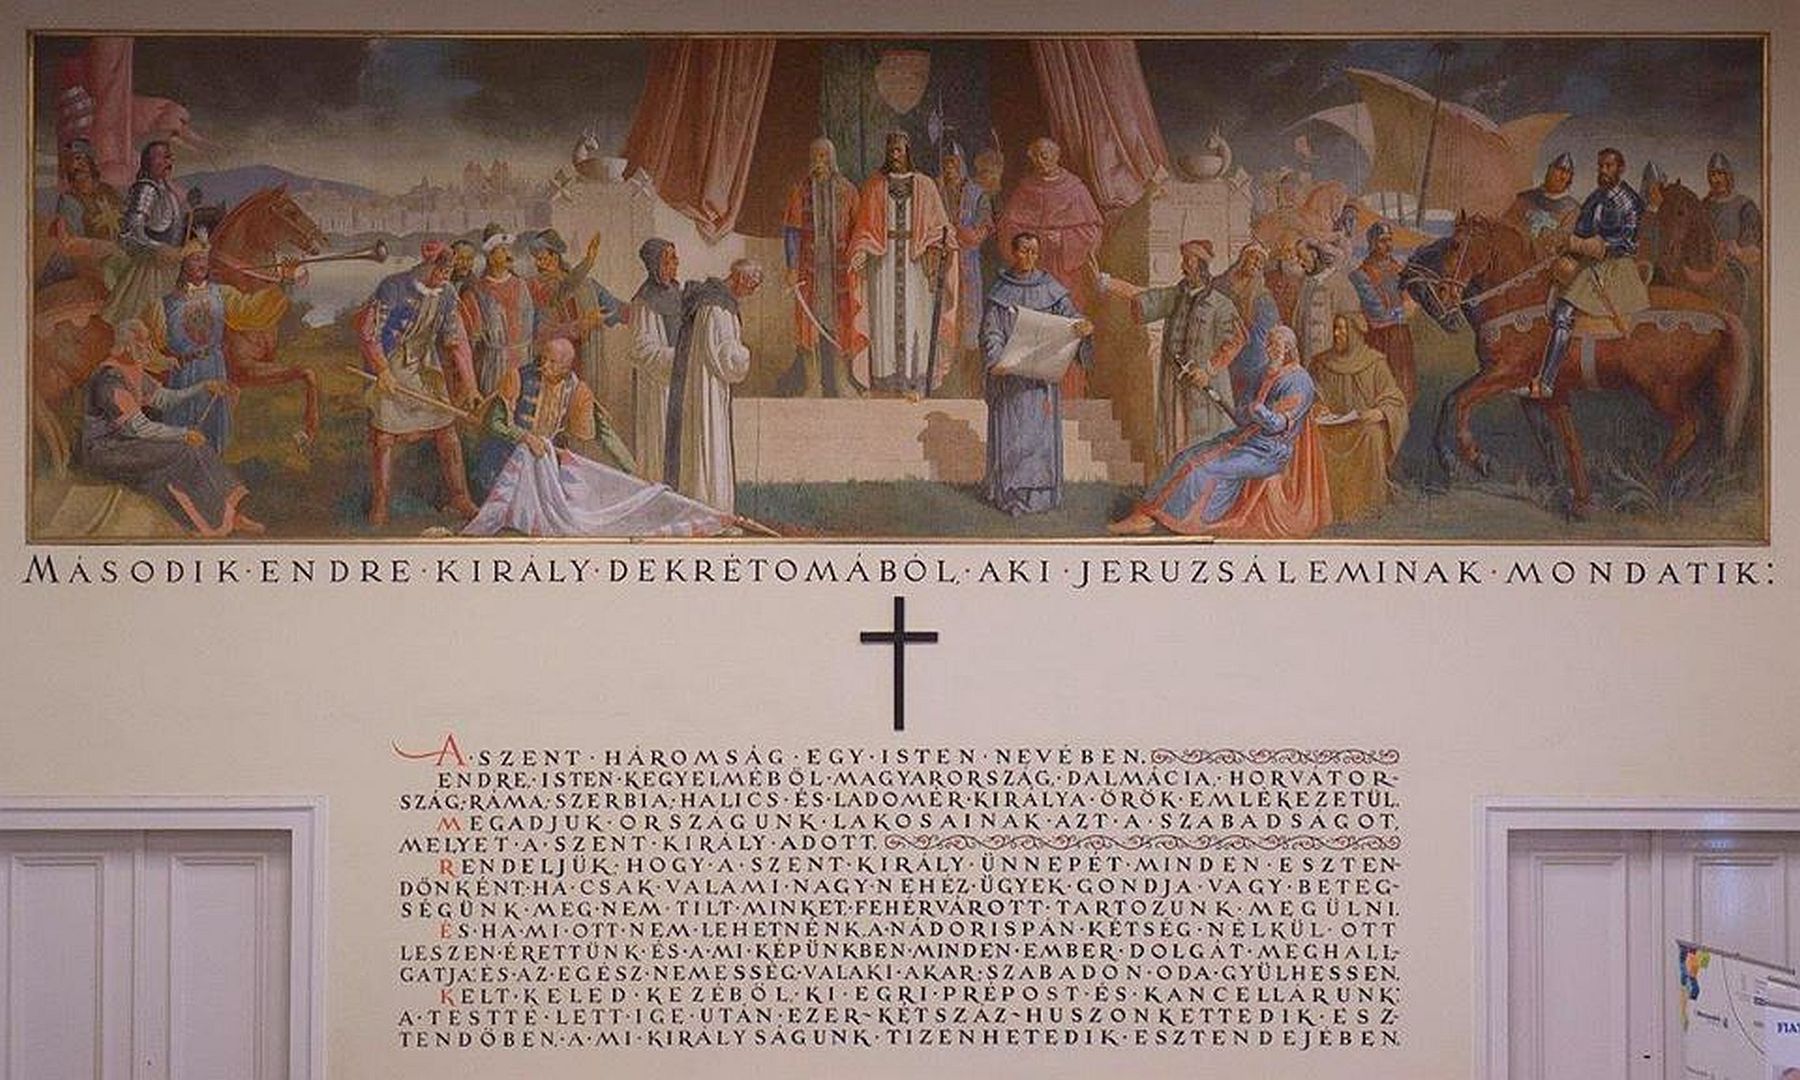 1205. május 29-én koronázták meg II. András királyt Székesfehérváron